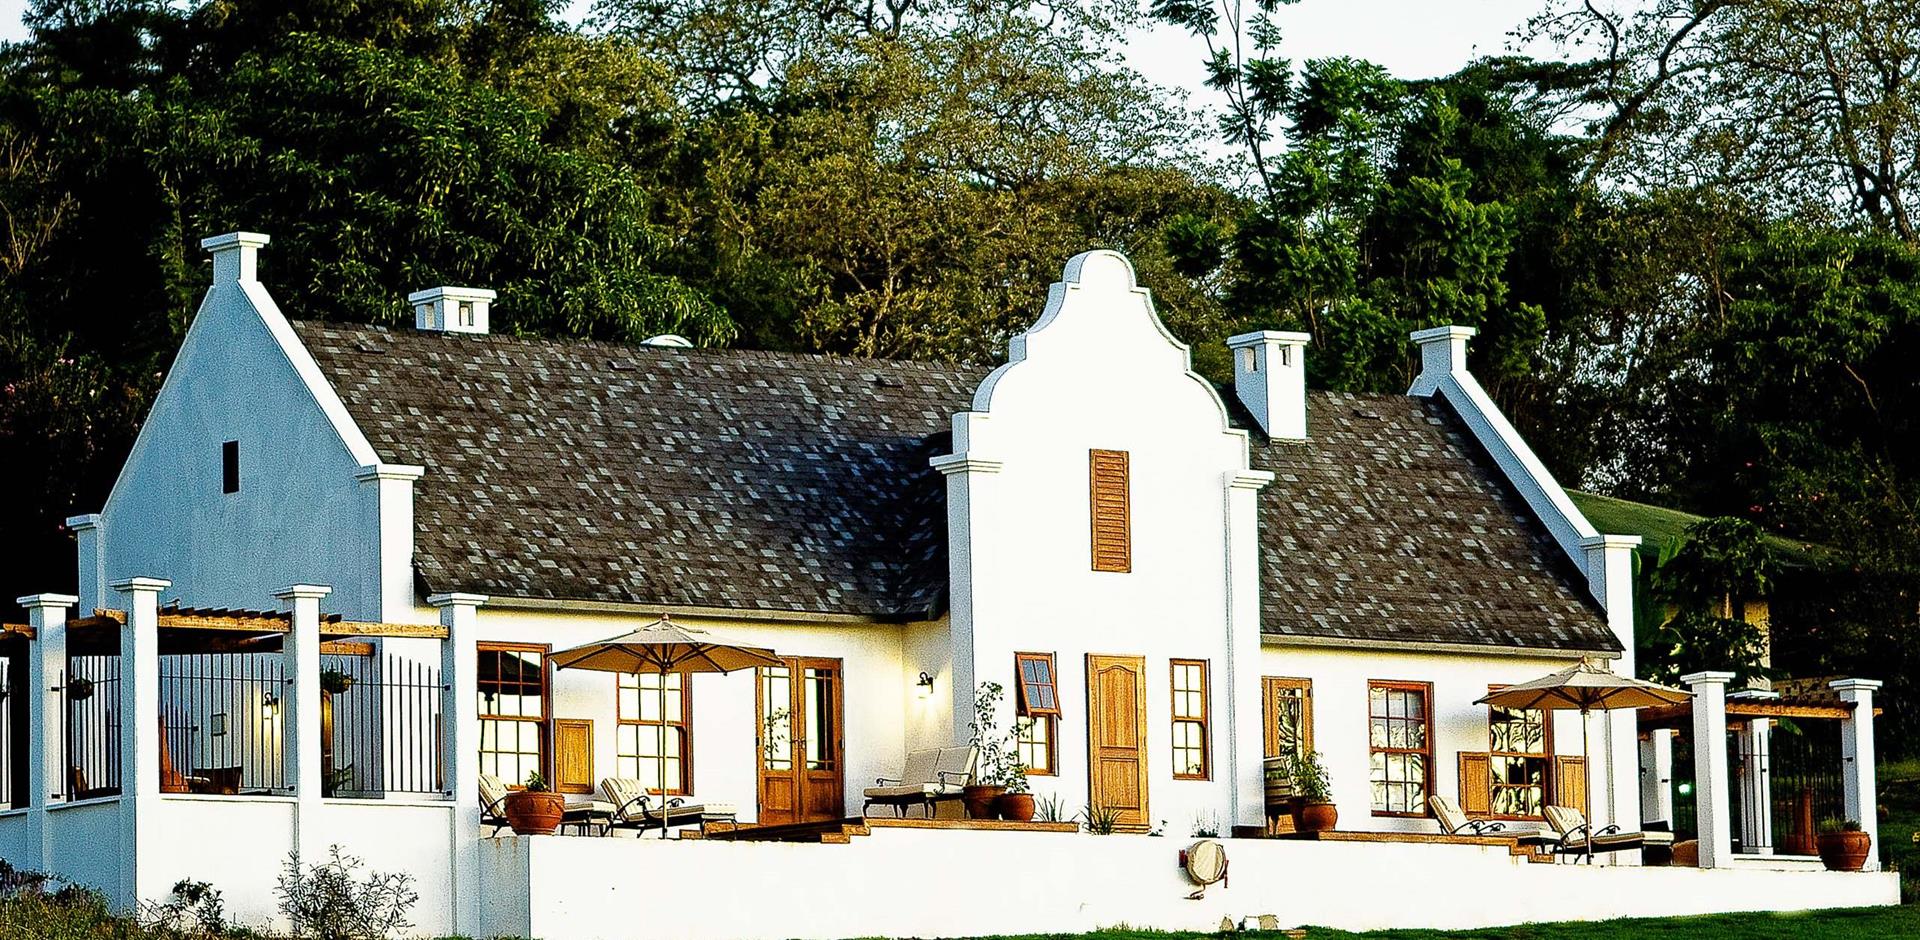 Exterior, Elewana The Manor at Ngorongoro, Tanzania, A&K